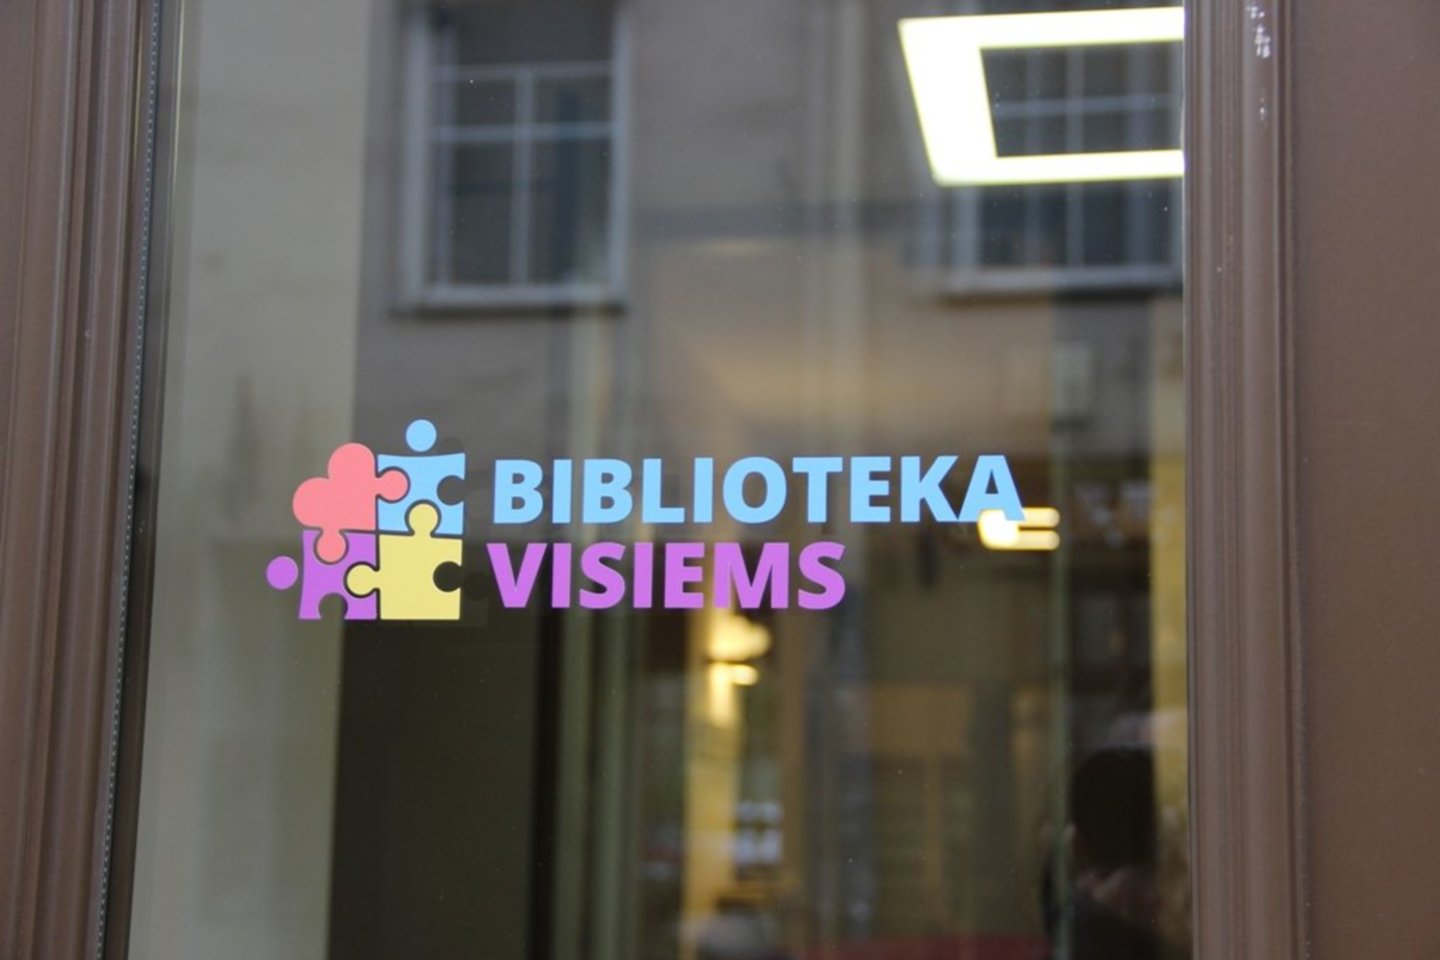  Nuo lapkričio mėnesio Lietuvos viešųjų bibliotekų duris puošia spalvota dėlionė „Biblioteka visiems“. <br> Pranešimo spaudai nuotr.